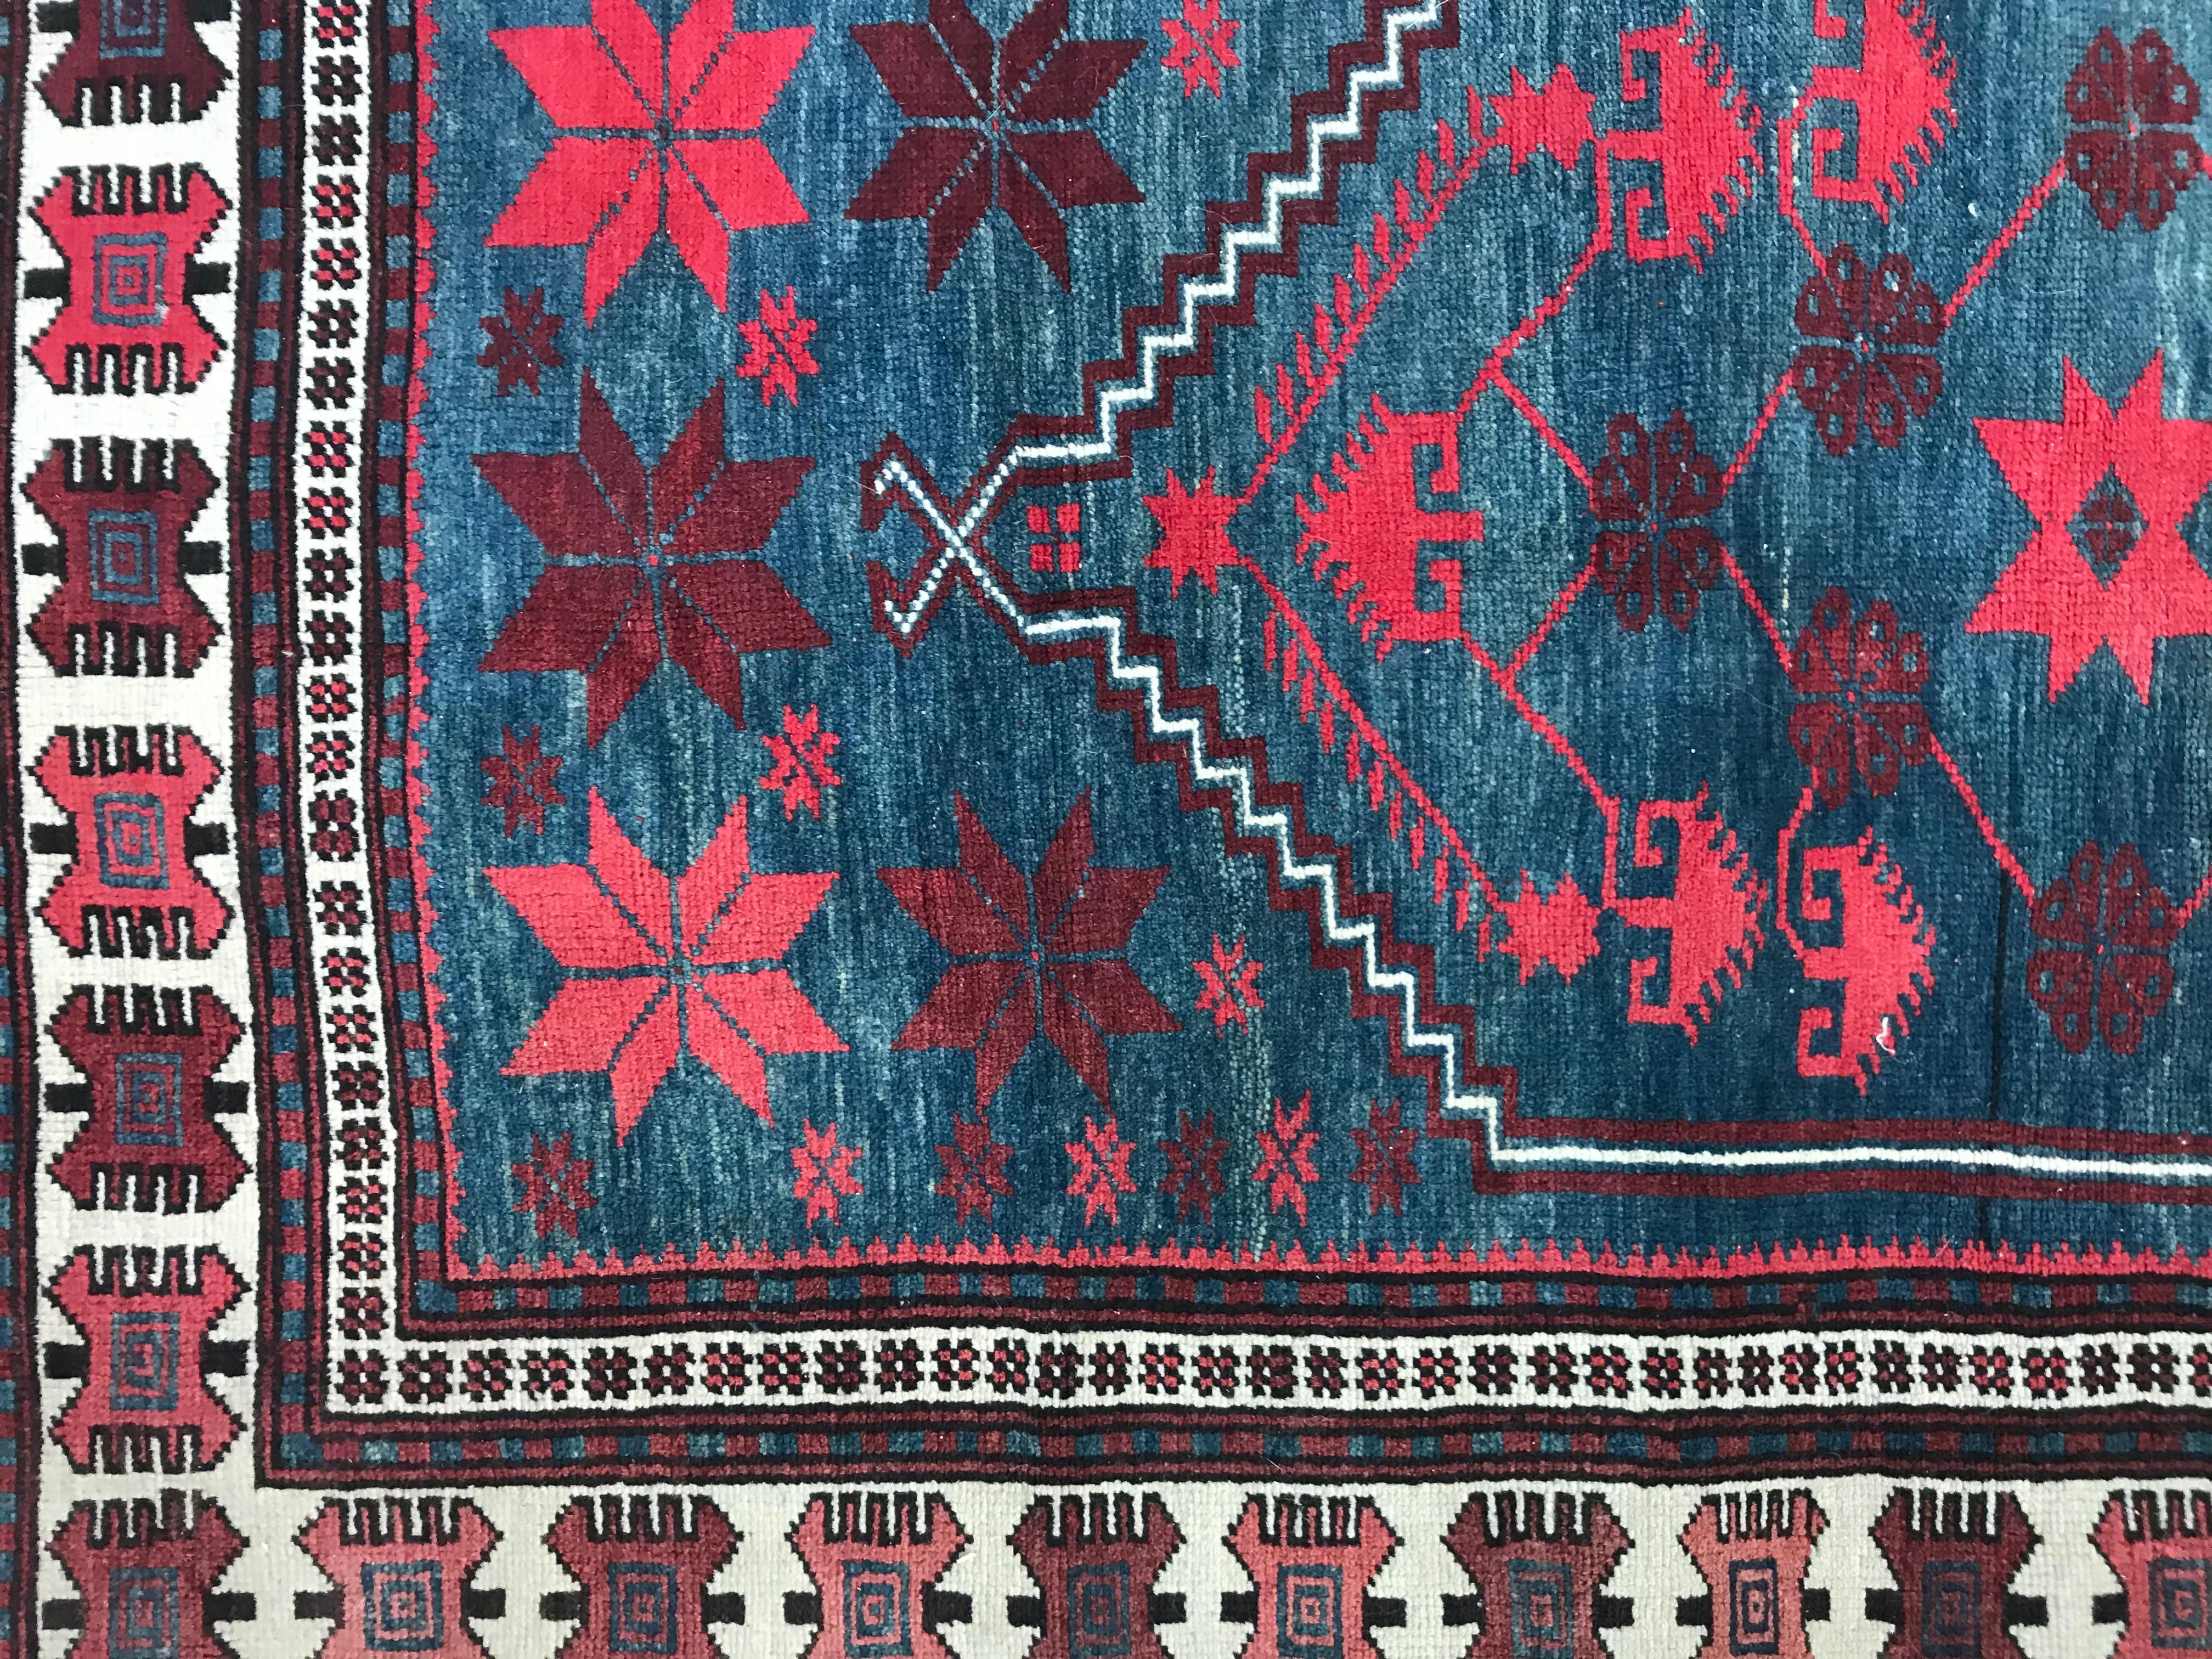 Ein schöner türkischer Teppich aus dem 20. Jahrhundert mit geometrischem Medaillonmuster und schönen Farben in Blau, Rosa und Violett, komplett handgeknüpft mit Wollsamt auf Wollfond.
 
✨✨✨
